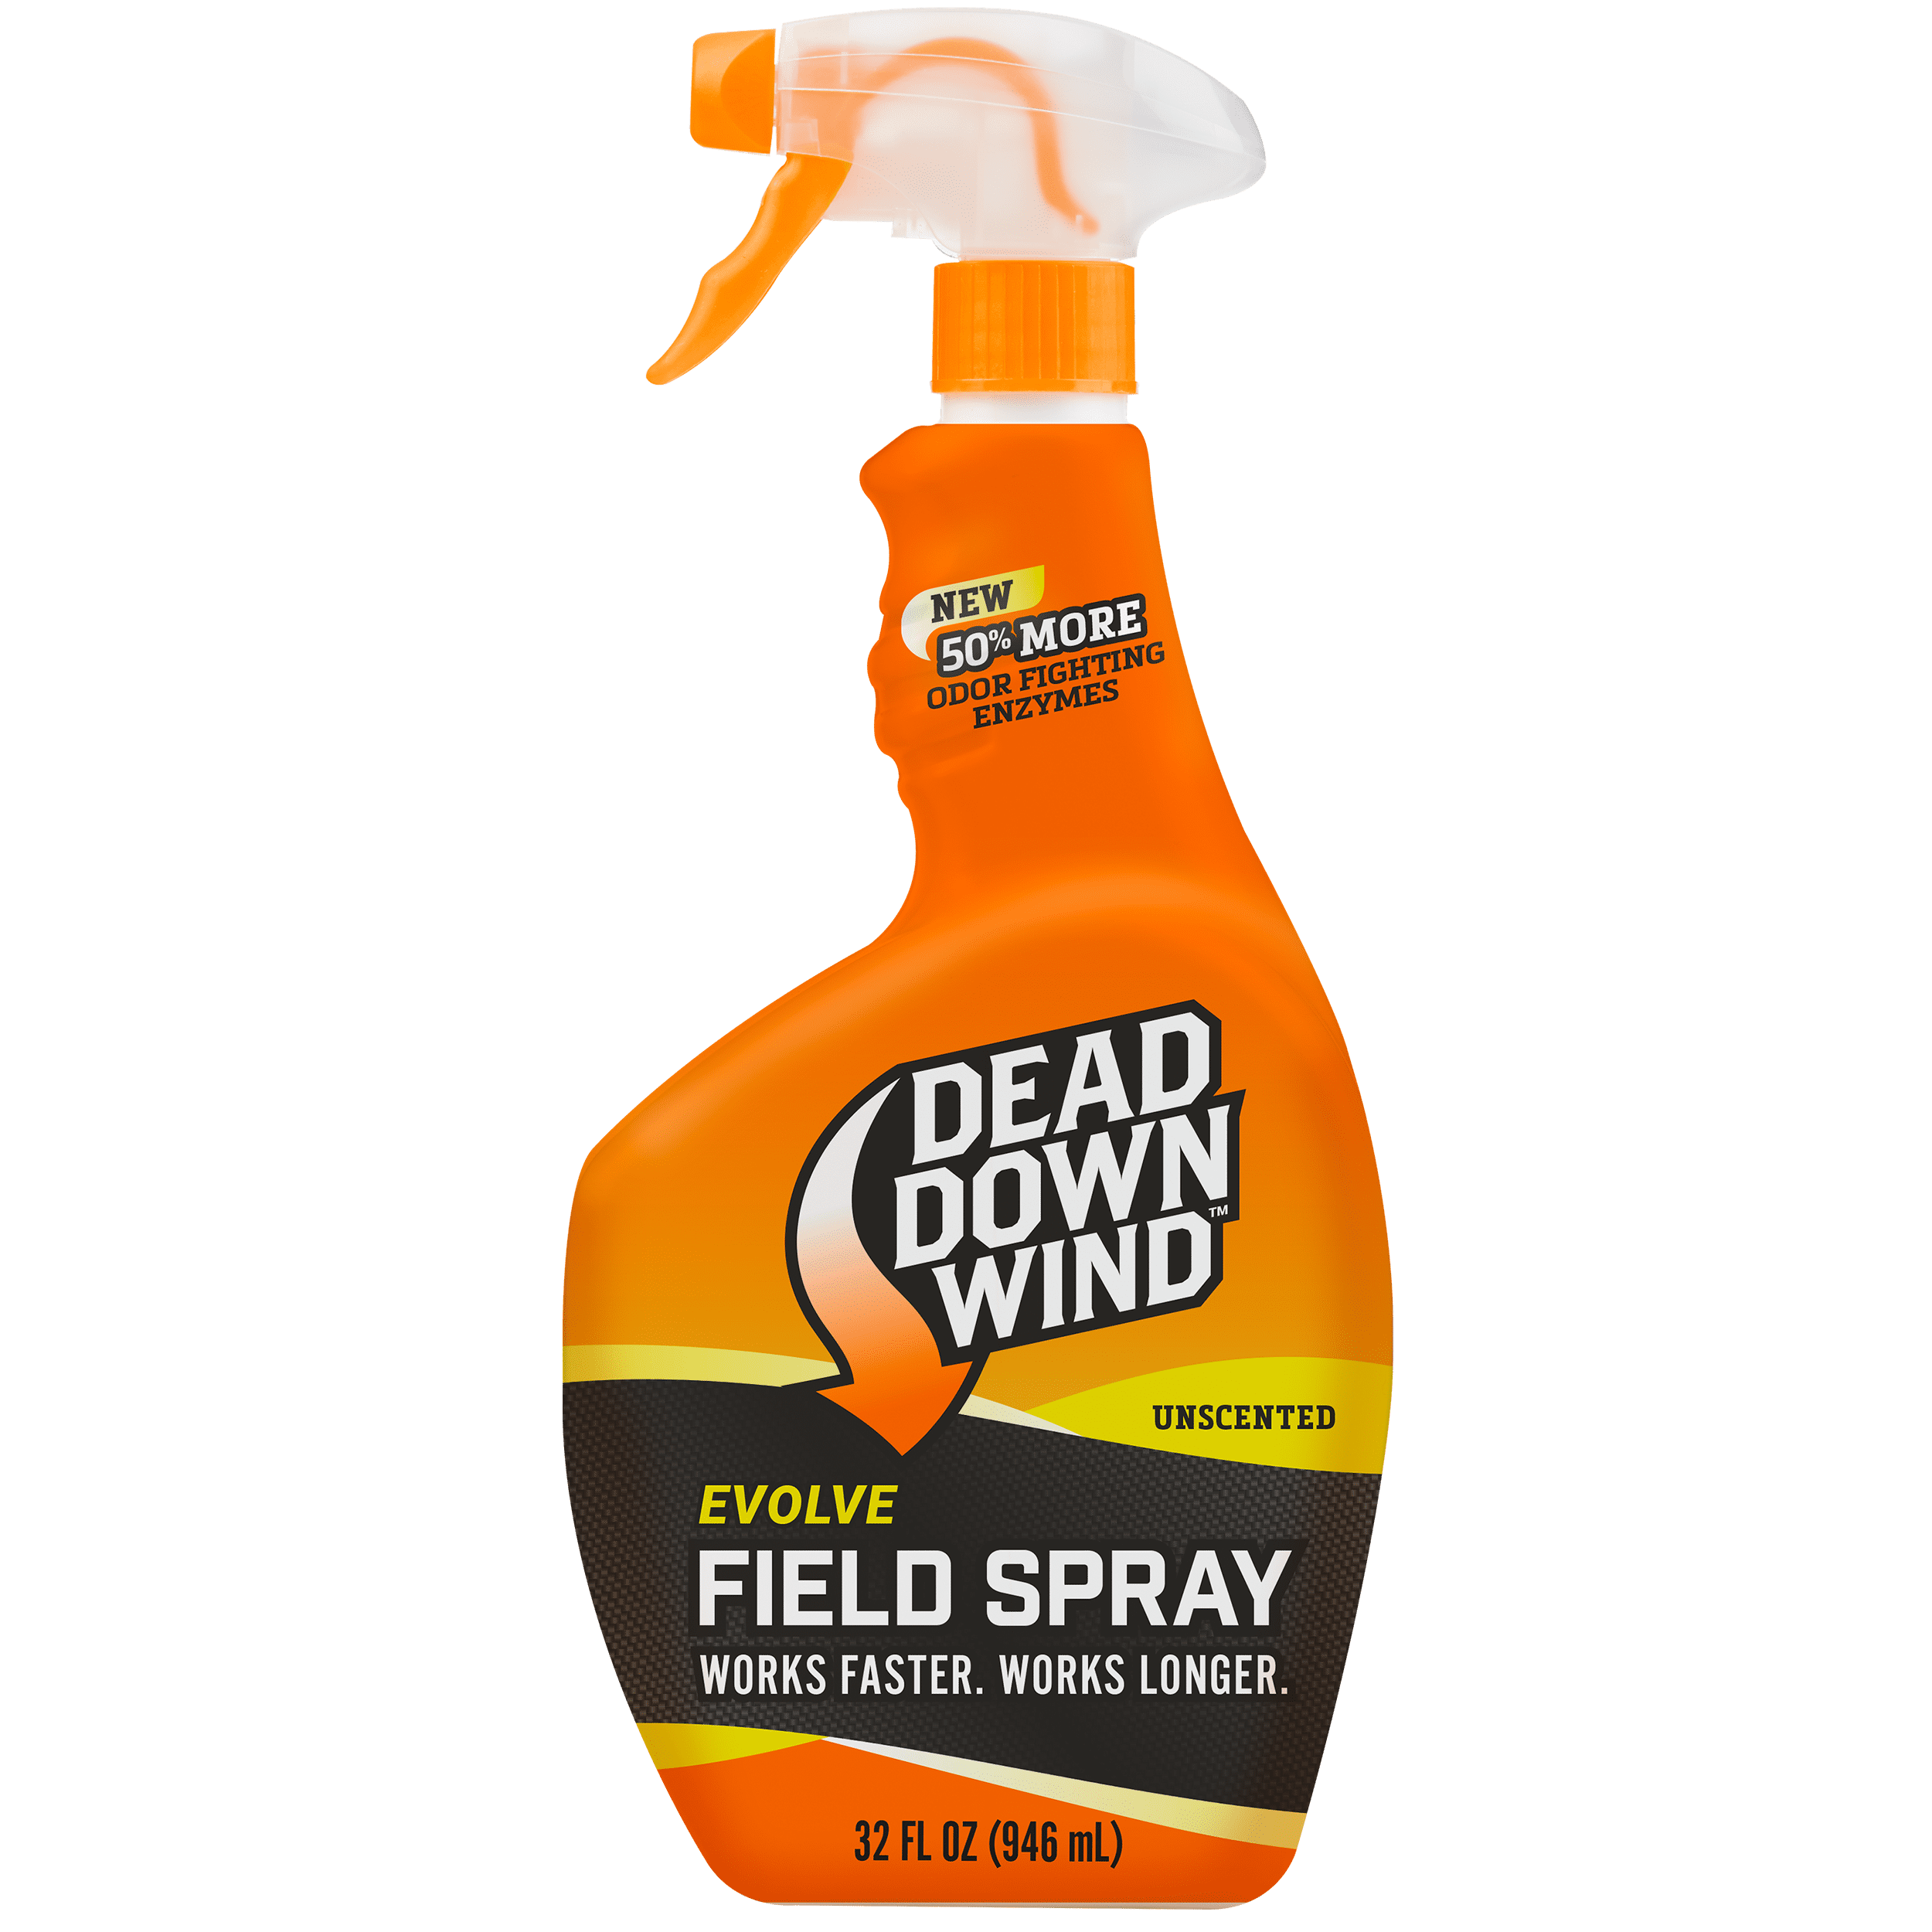 dead-down-wind-field-spray-unscented-32-oz-walmart-inventory